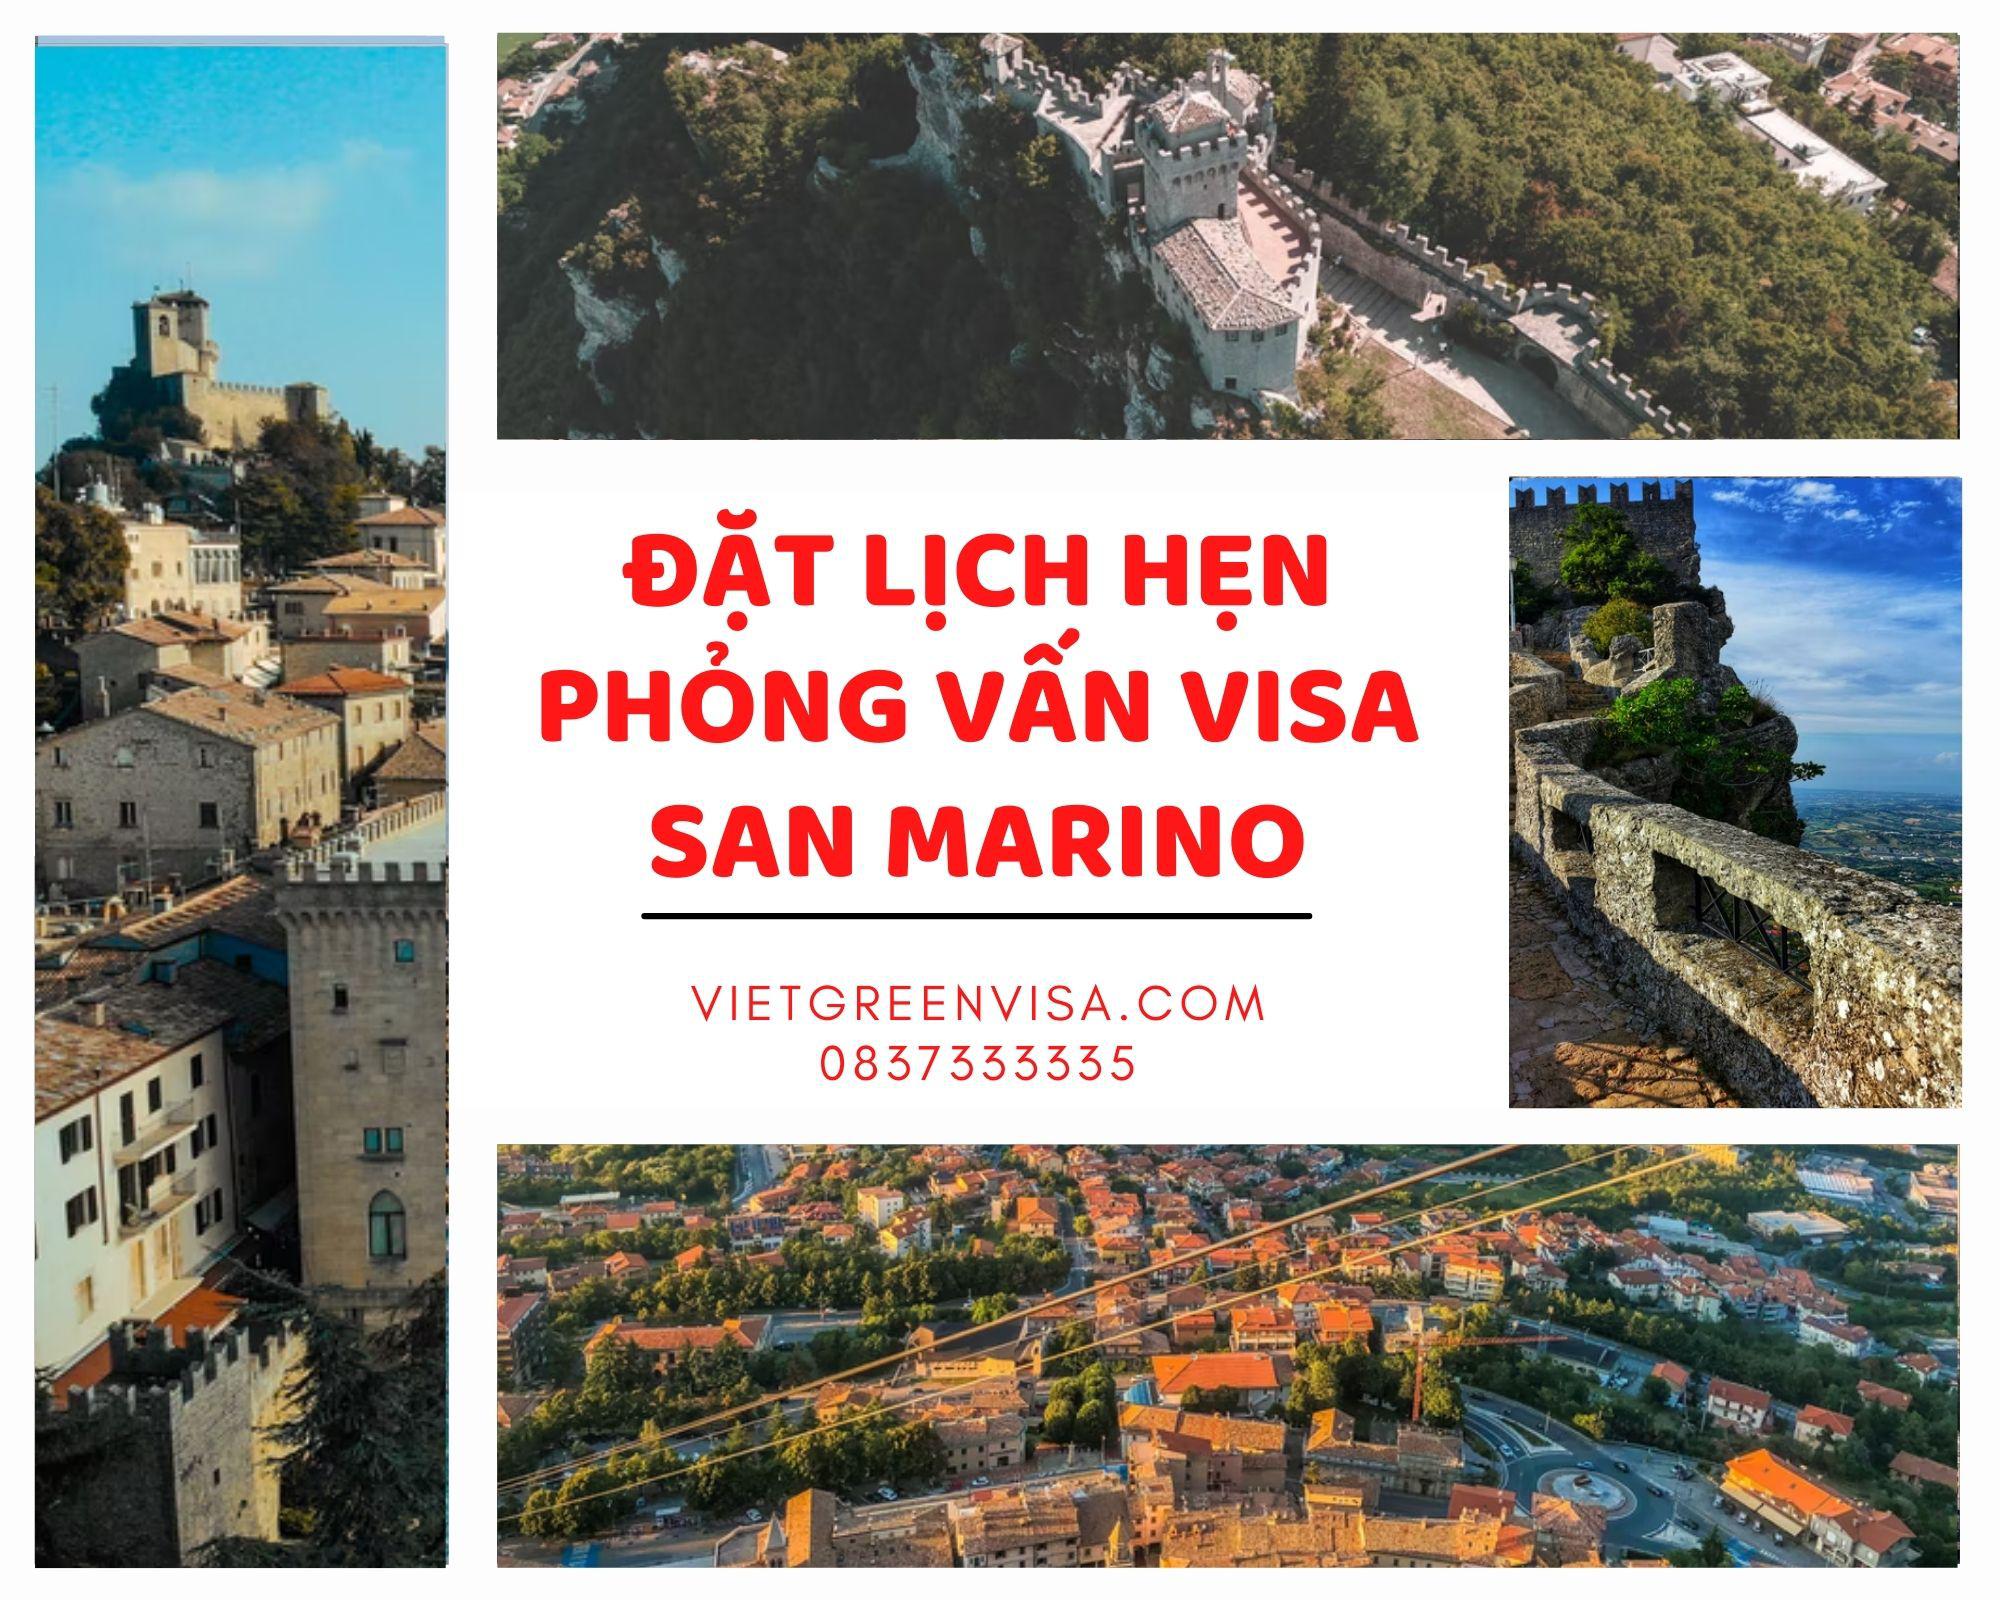 Viet Green Visa, đặt lịch hẹn xin visa San Marino, visa San Marino